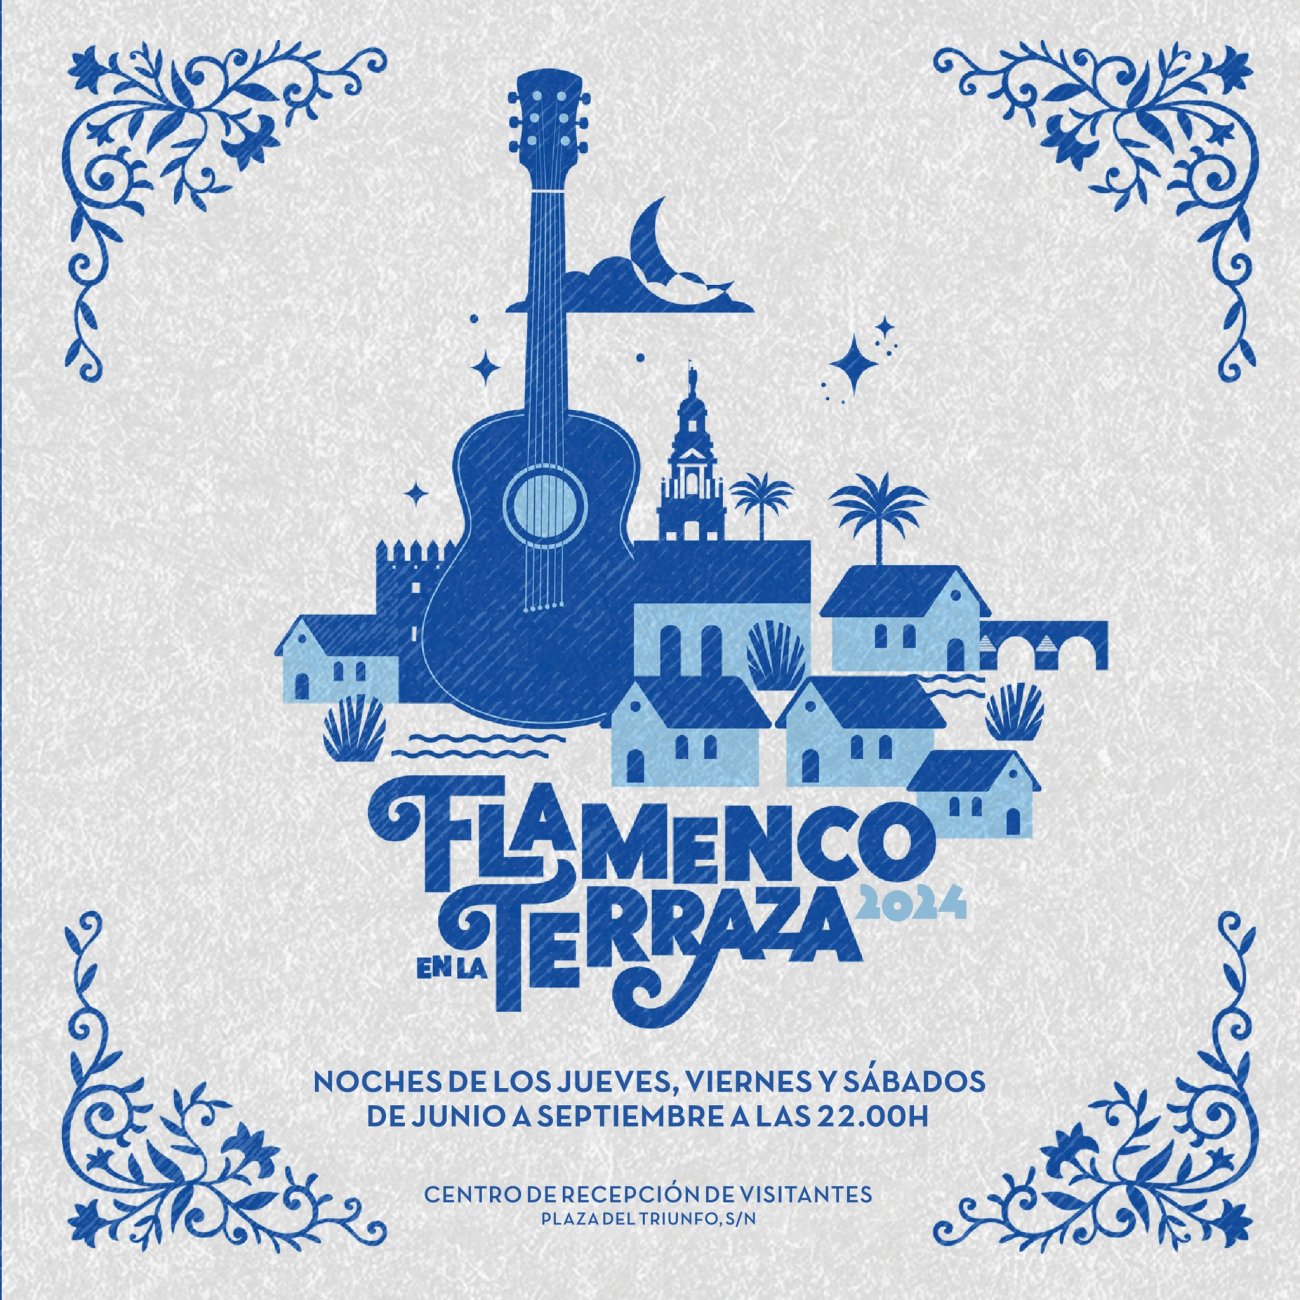 Flamenco en la Terraza